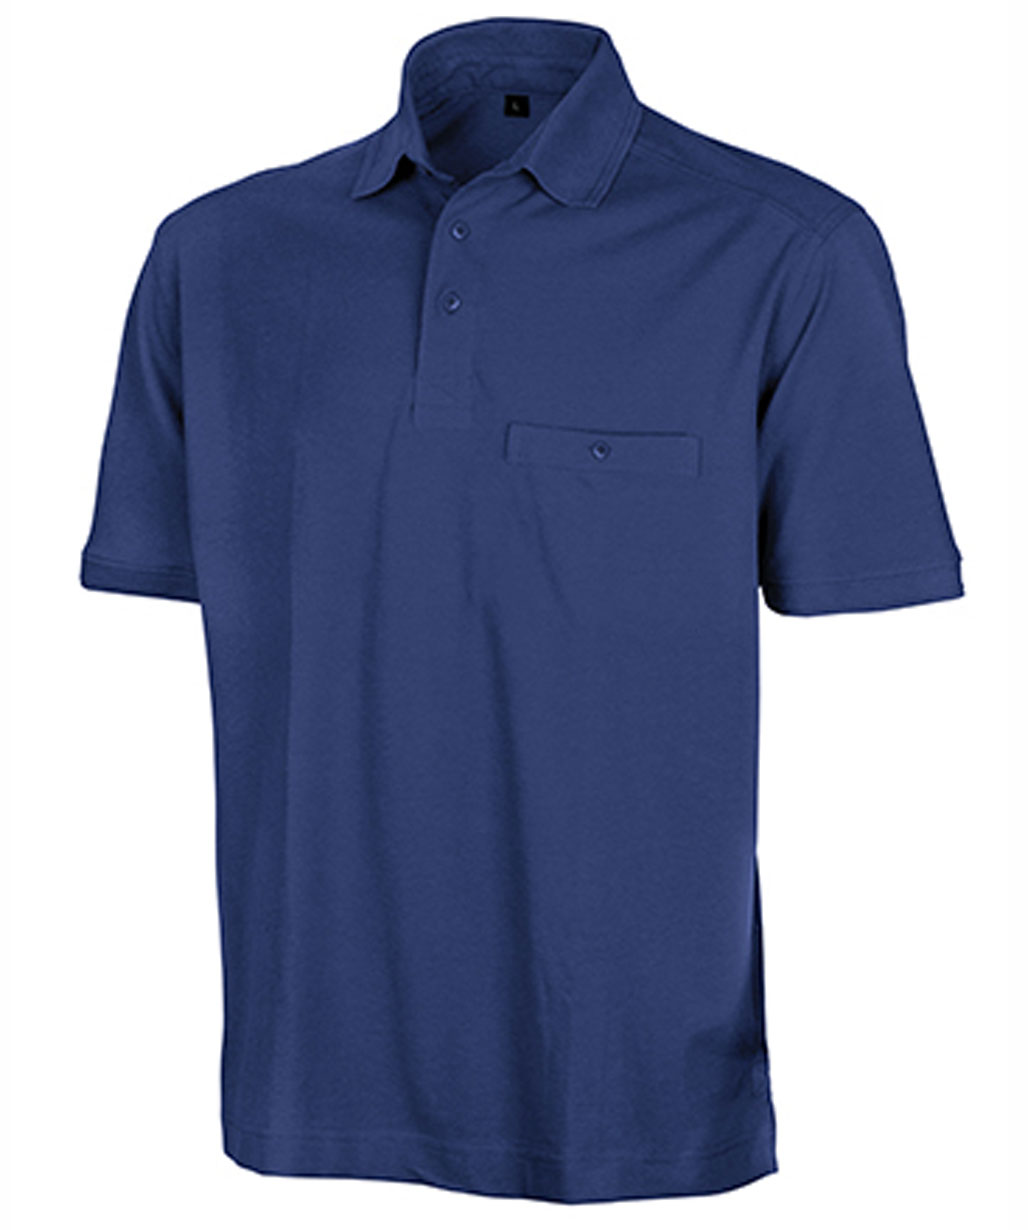 Apex Pocket Polo Shirt WorkGuard RT312